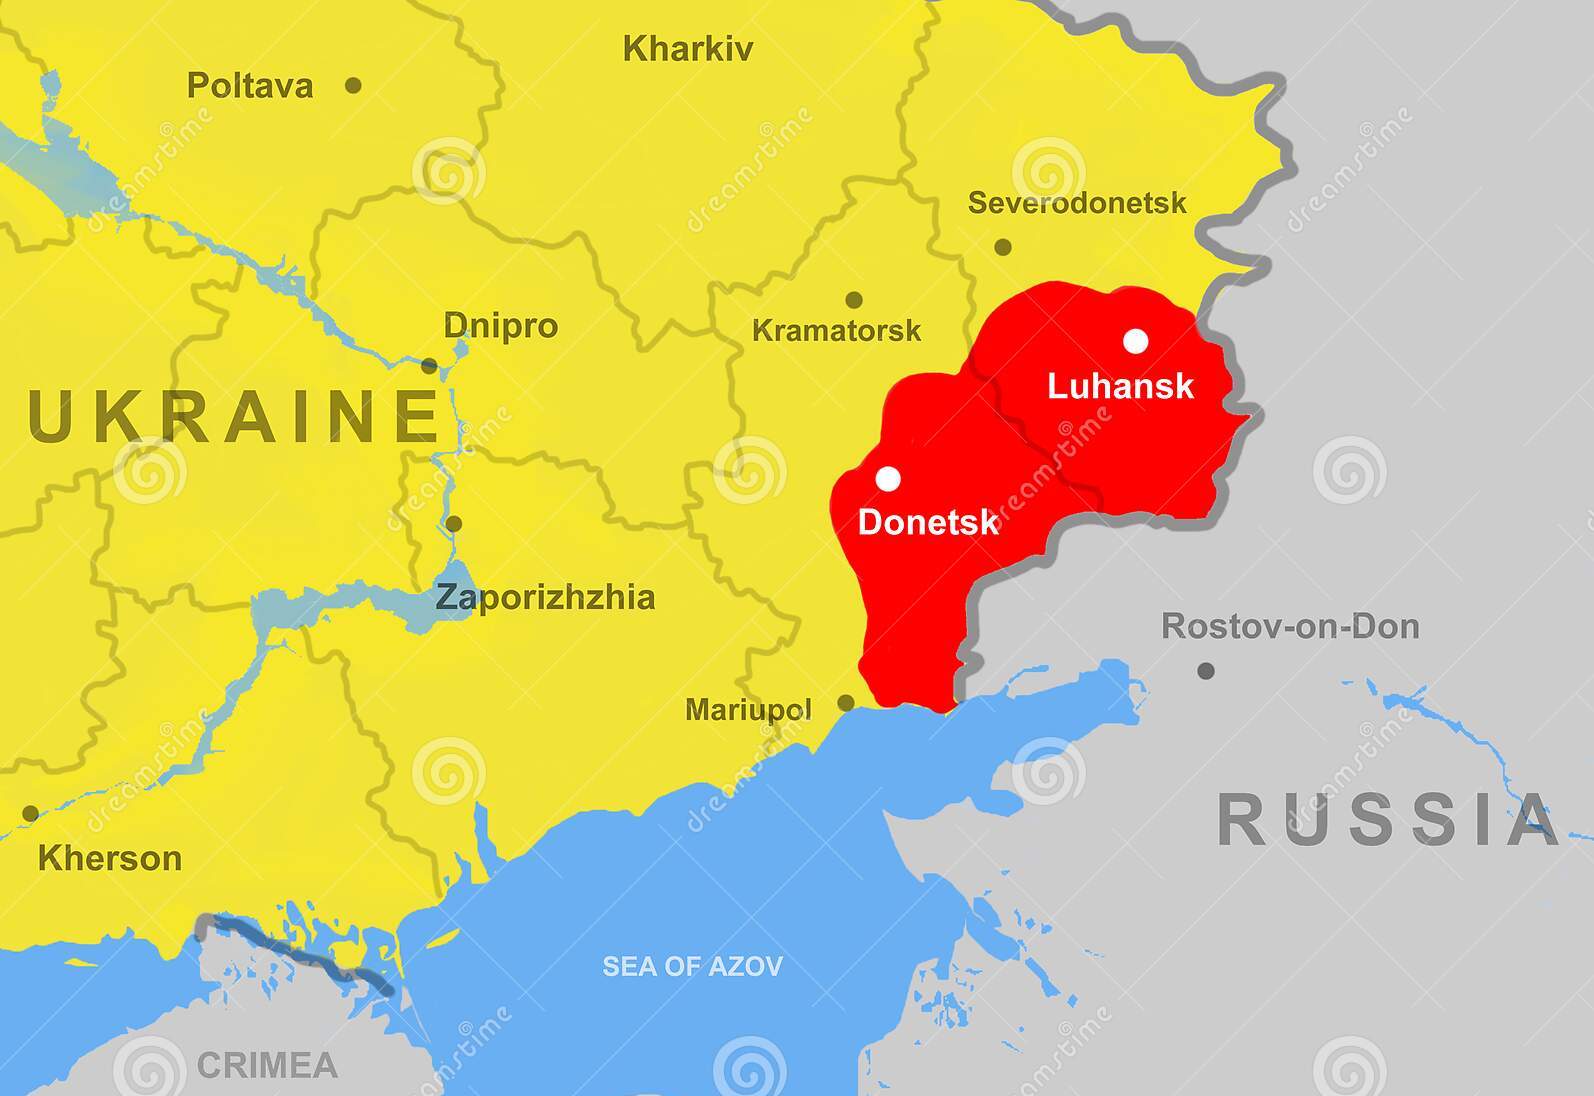 Vì sao chiến dịch quân sự của Nga tập trung chủ yếu vào Donbass và Biển Đen? - 1